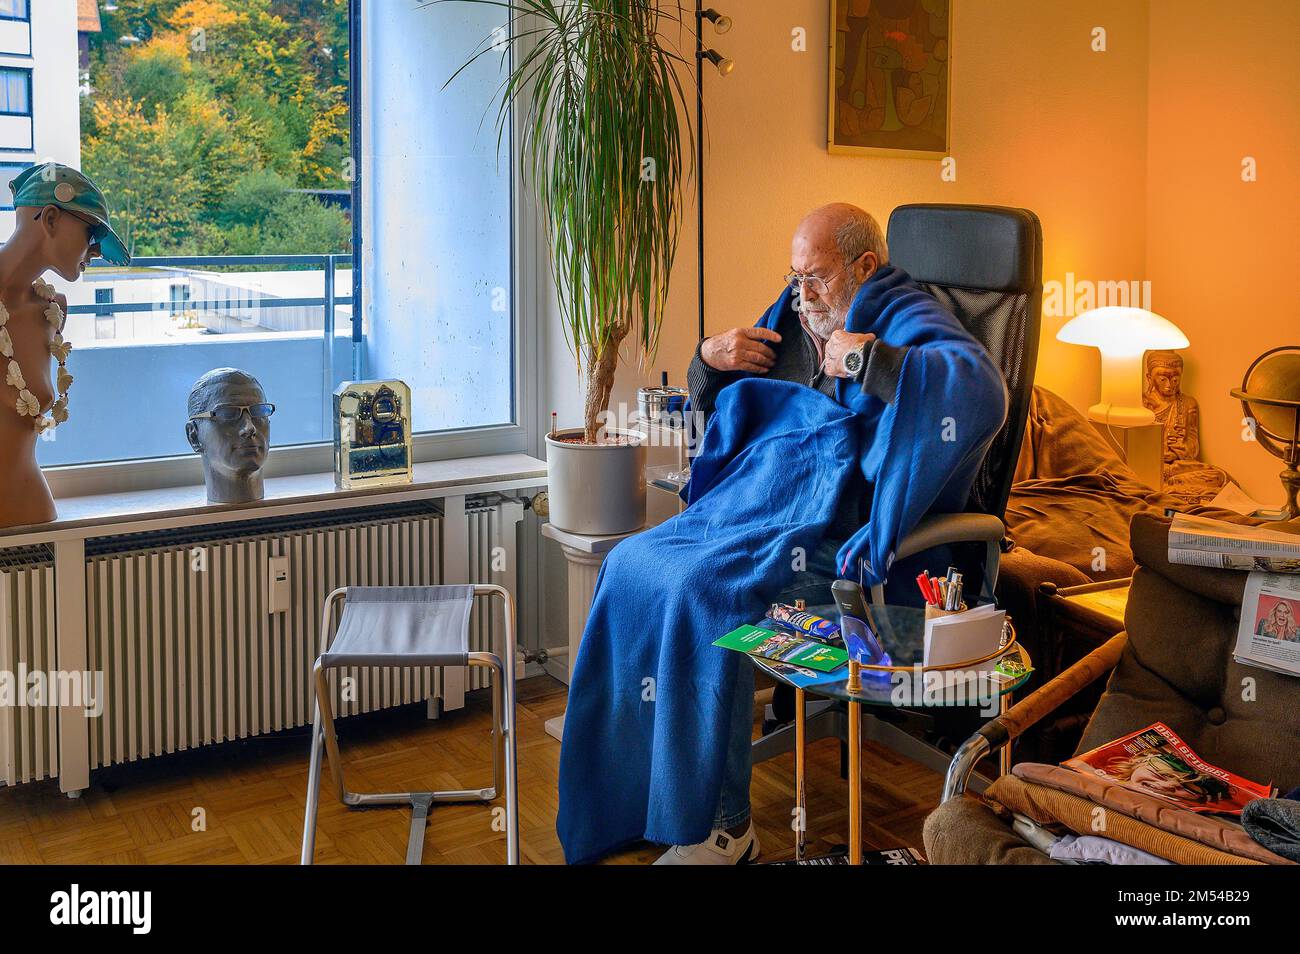 Vecchio avvolto in coperte, risparmiare energia, congelare a causa di Putin, risparmiare costi di riscaldamento, bassa temperatura ambiente, Baviera, Germania Foto Stock